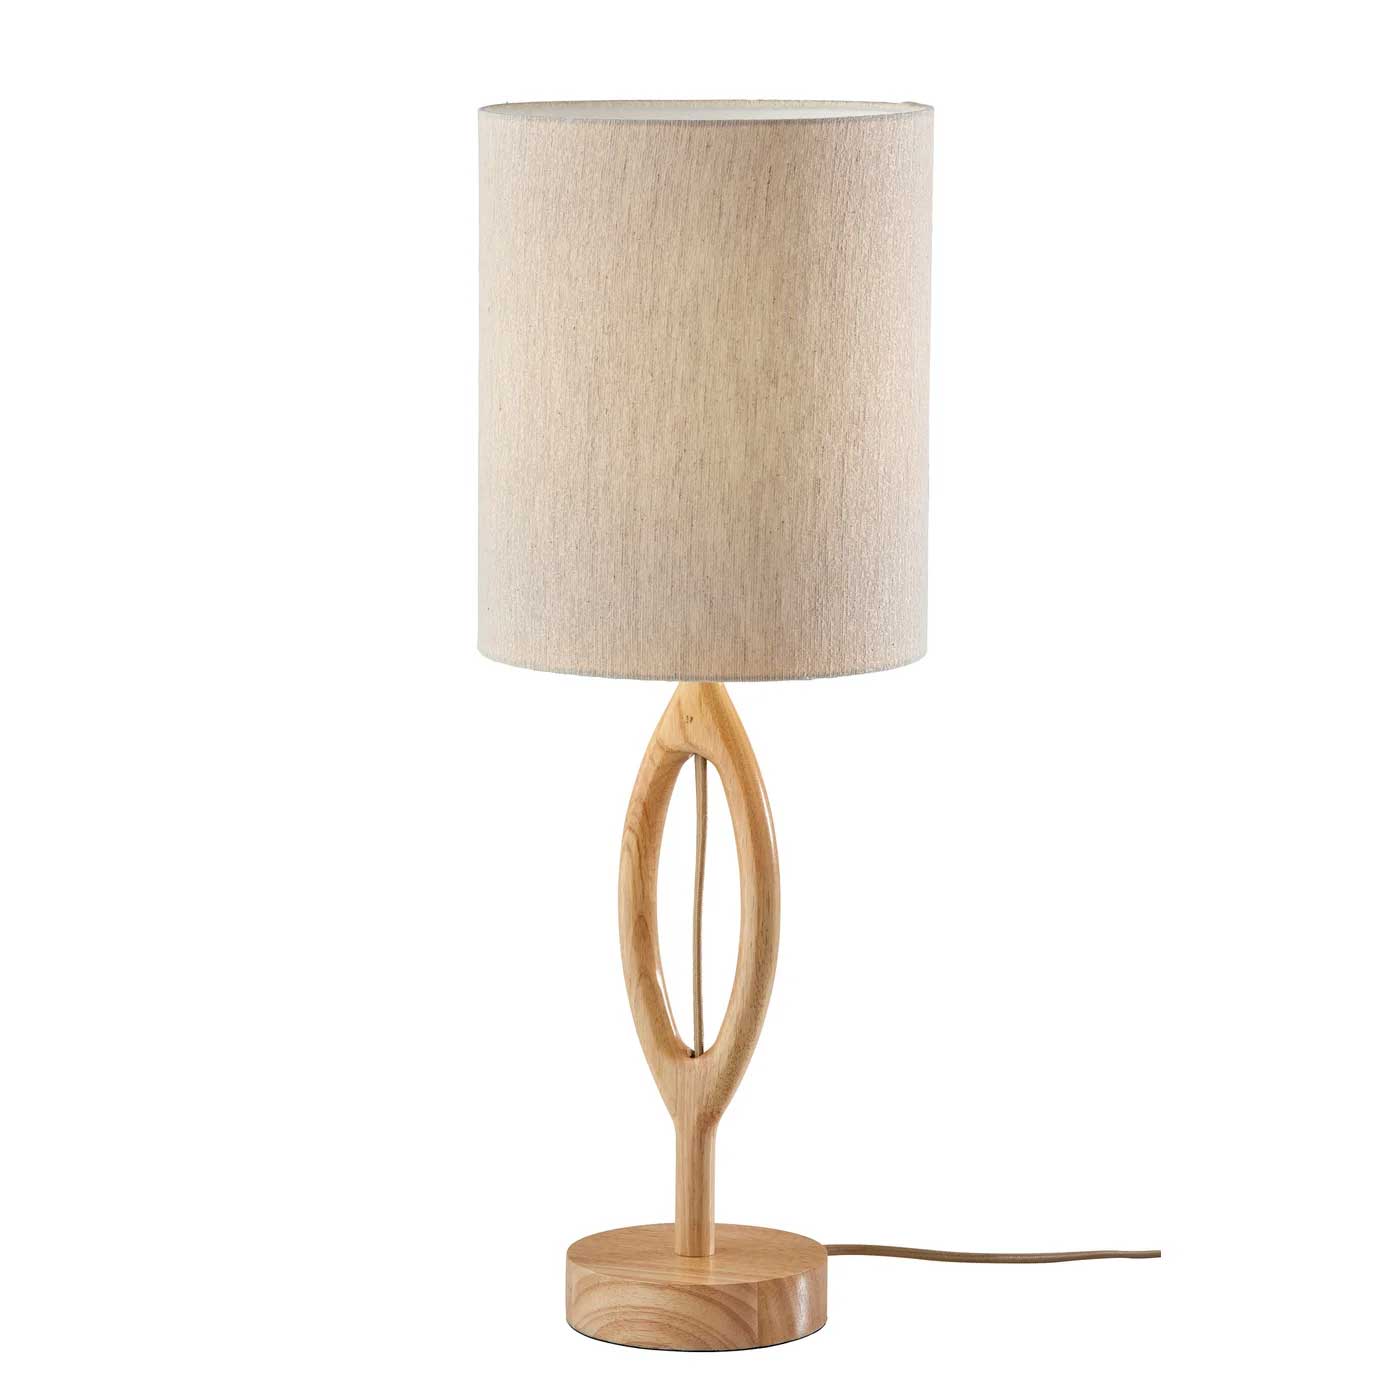 MAYFAIR Lampe sur table Bois - -99375 | ADESSO